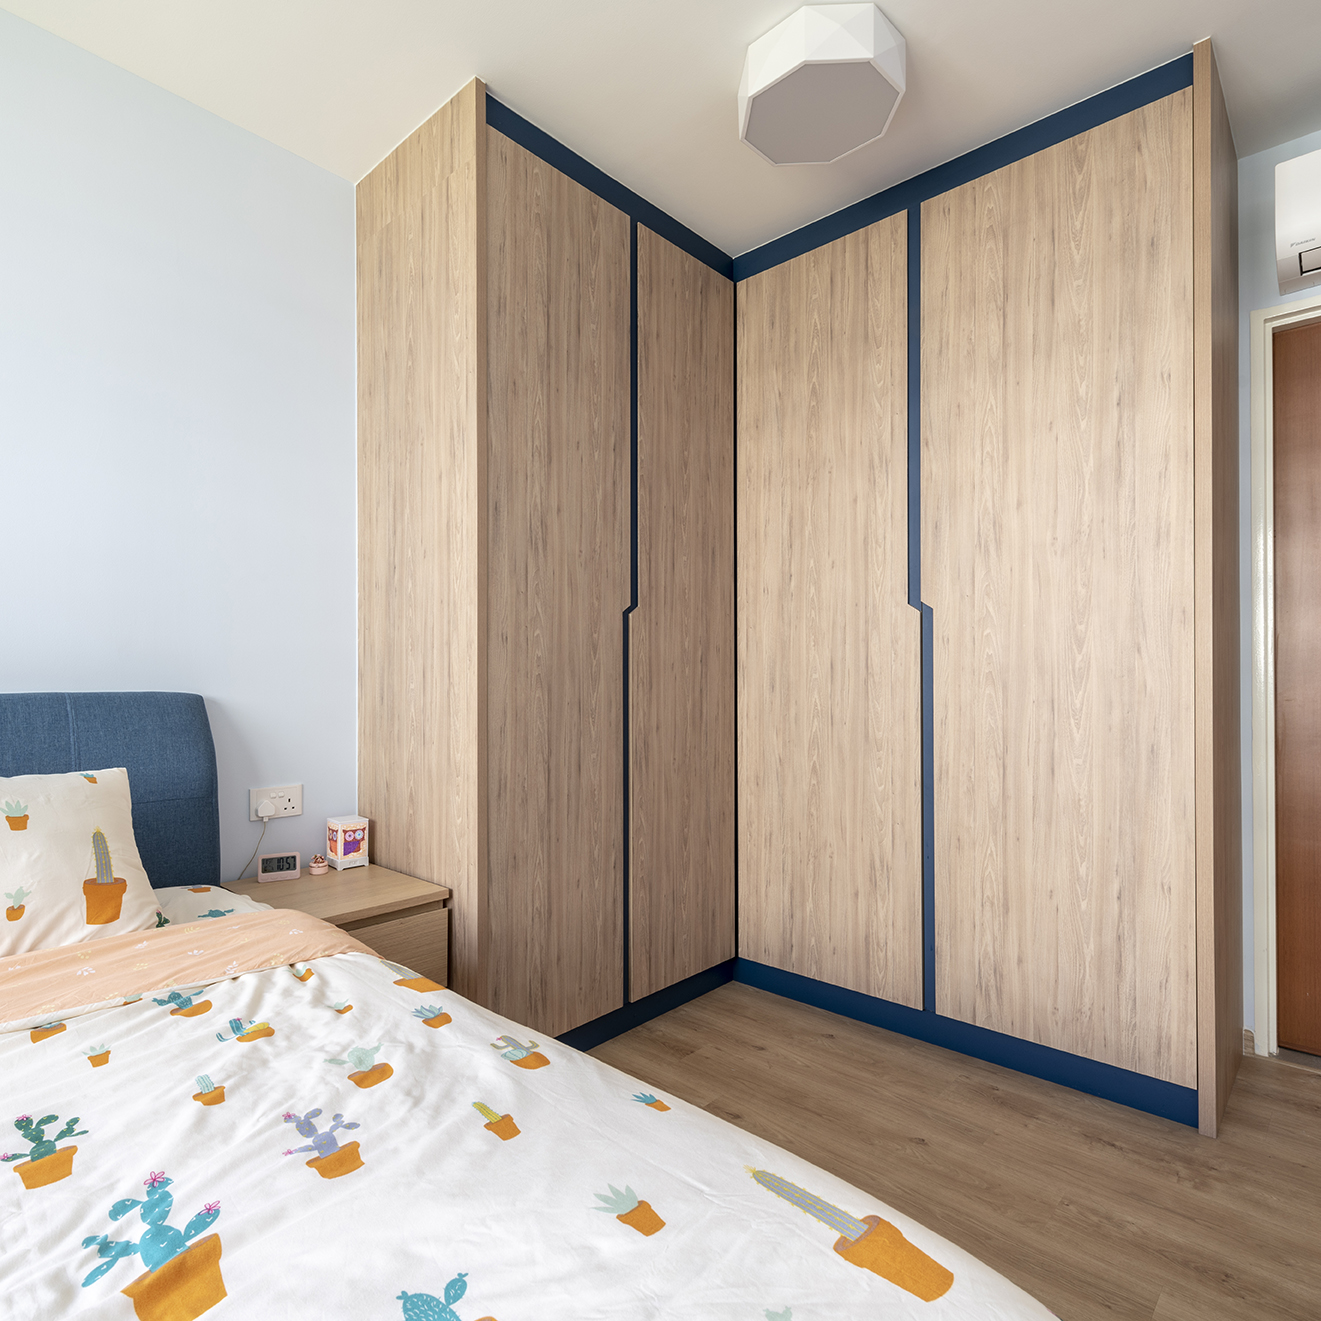 Minimalist, Scandinavian Design - Bedroom - Others - Design by Metier Planner Pte Ltd